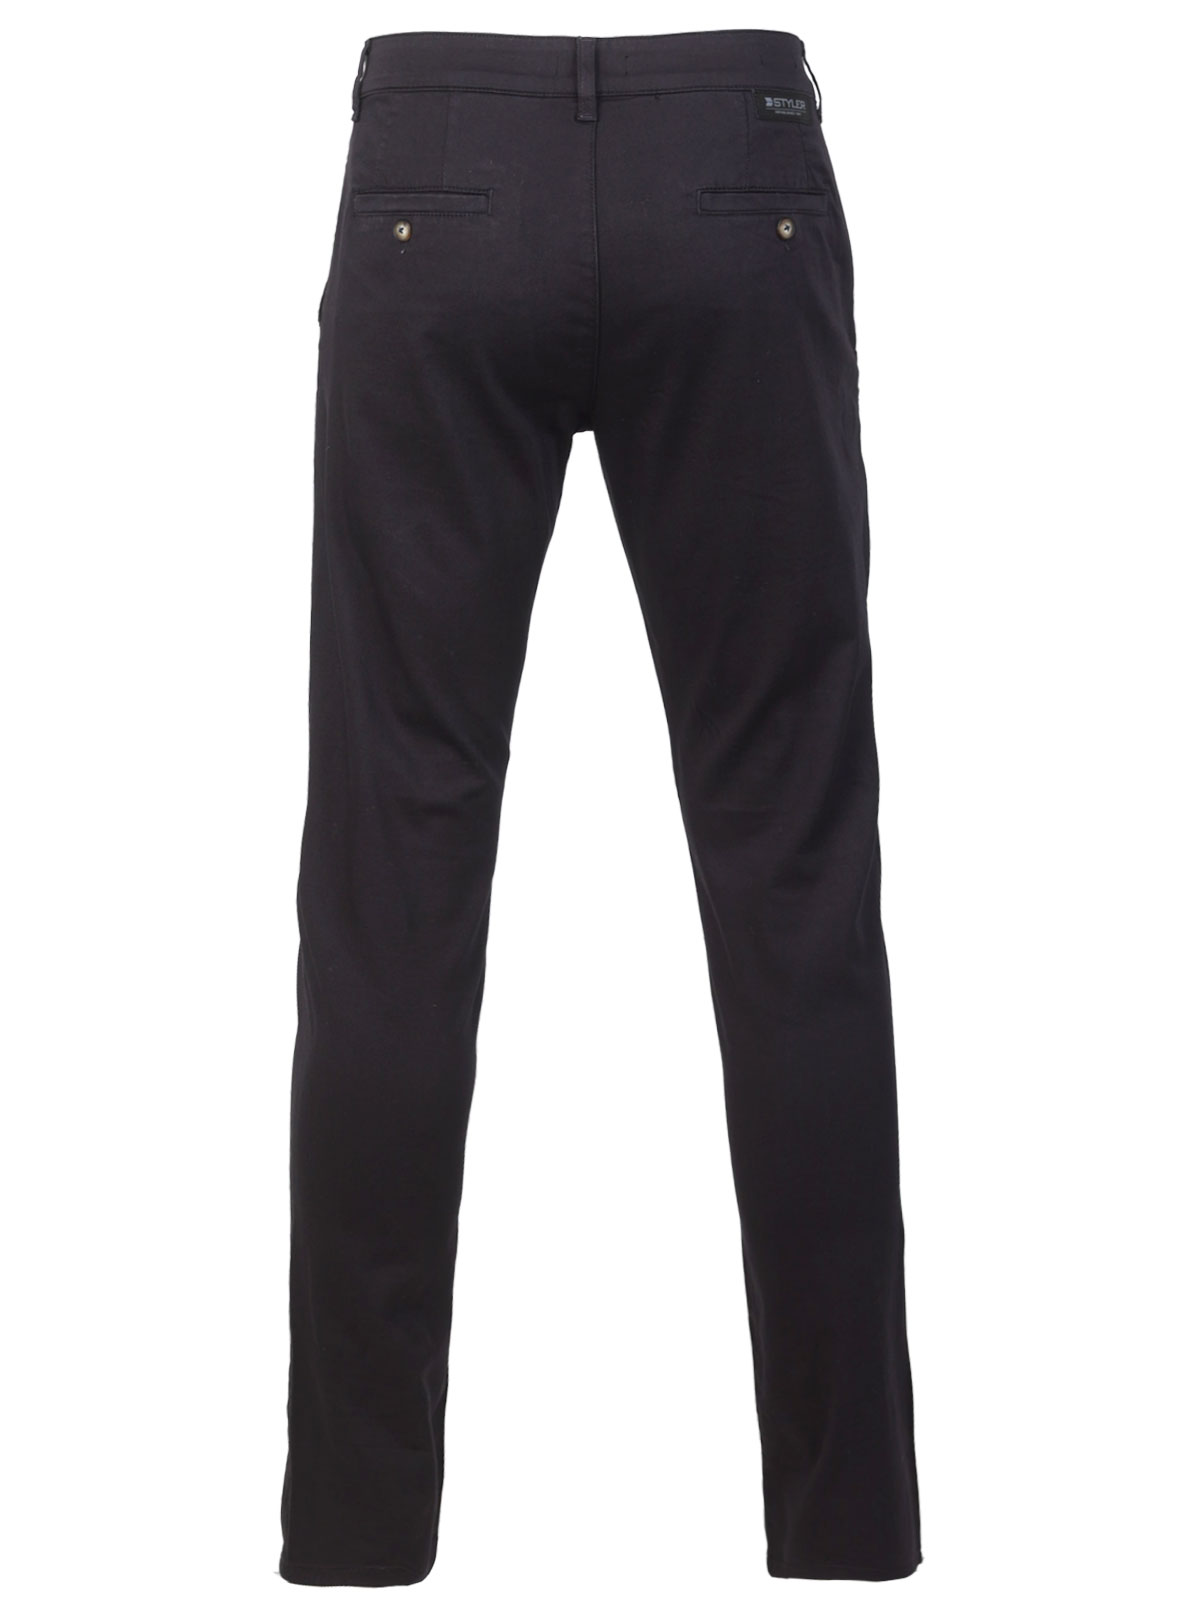 Pantaloni pentru bărbați de culoare alba - 60307 € 66.93 img2